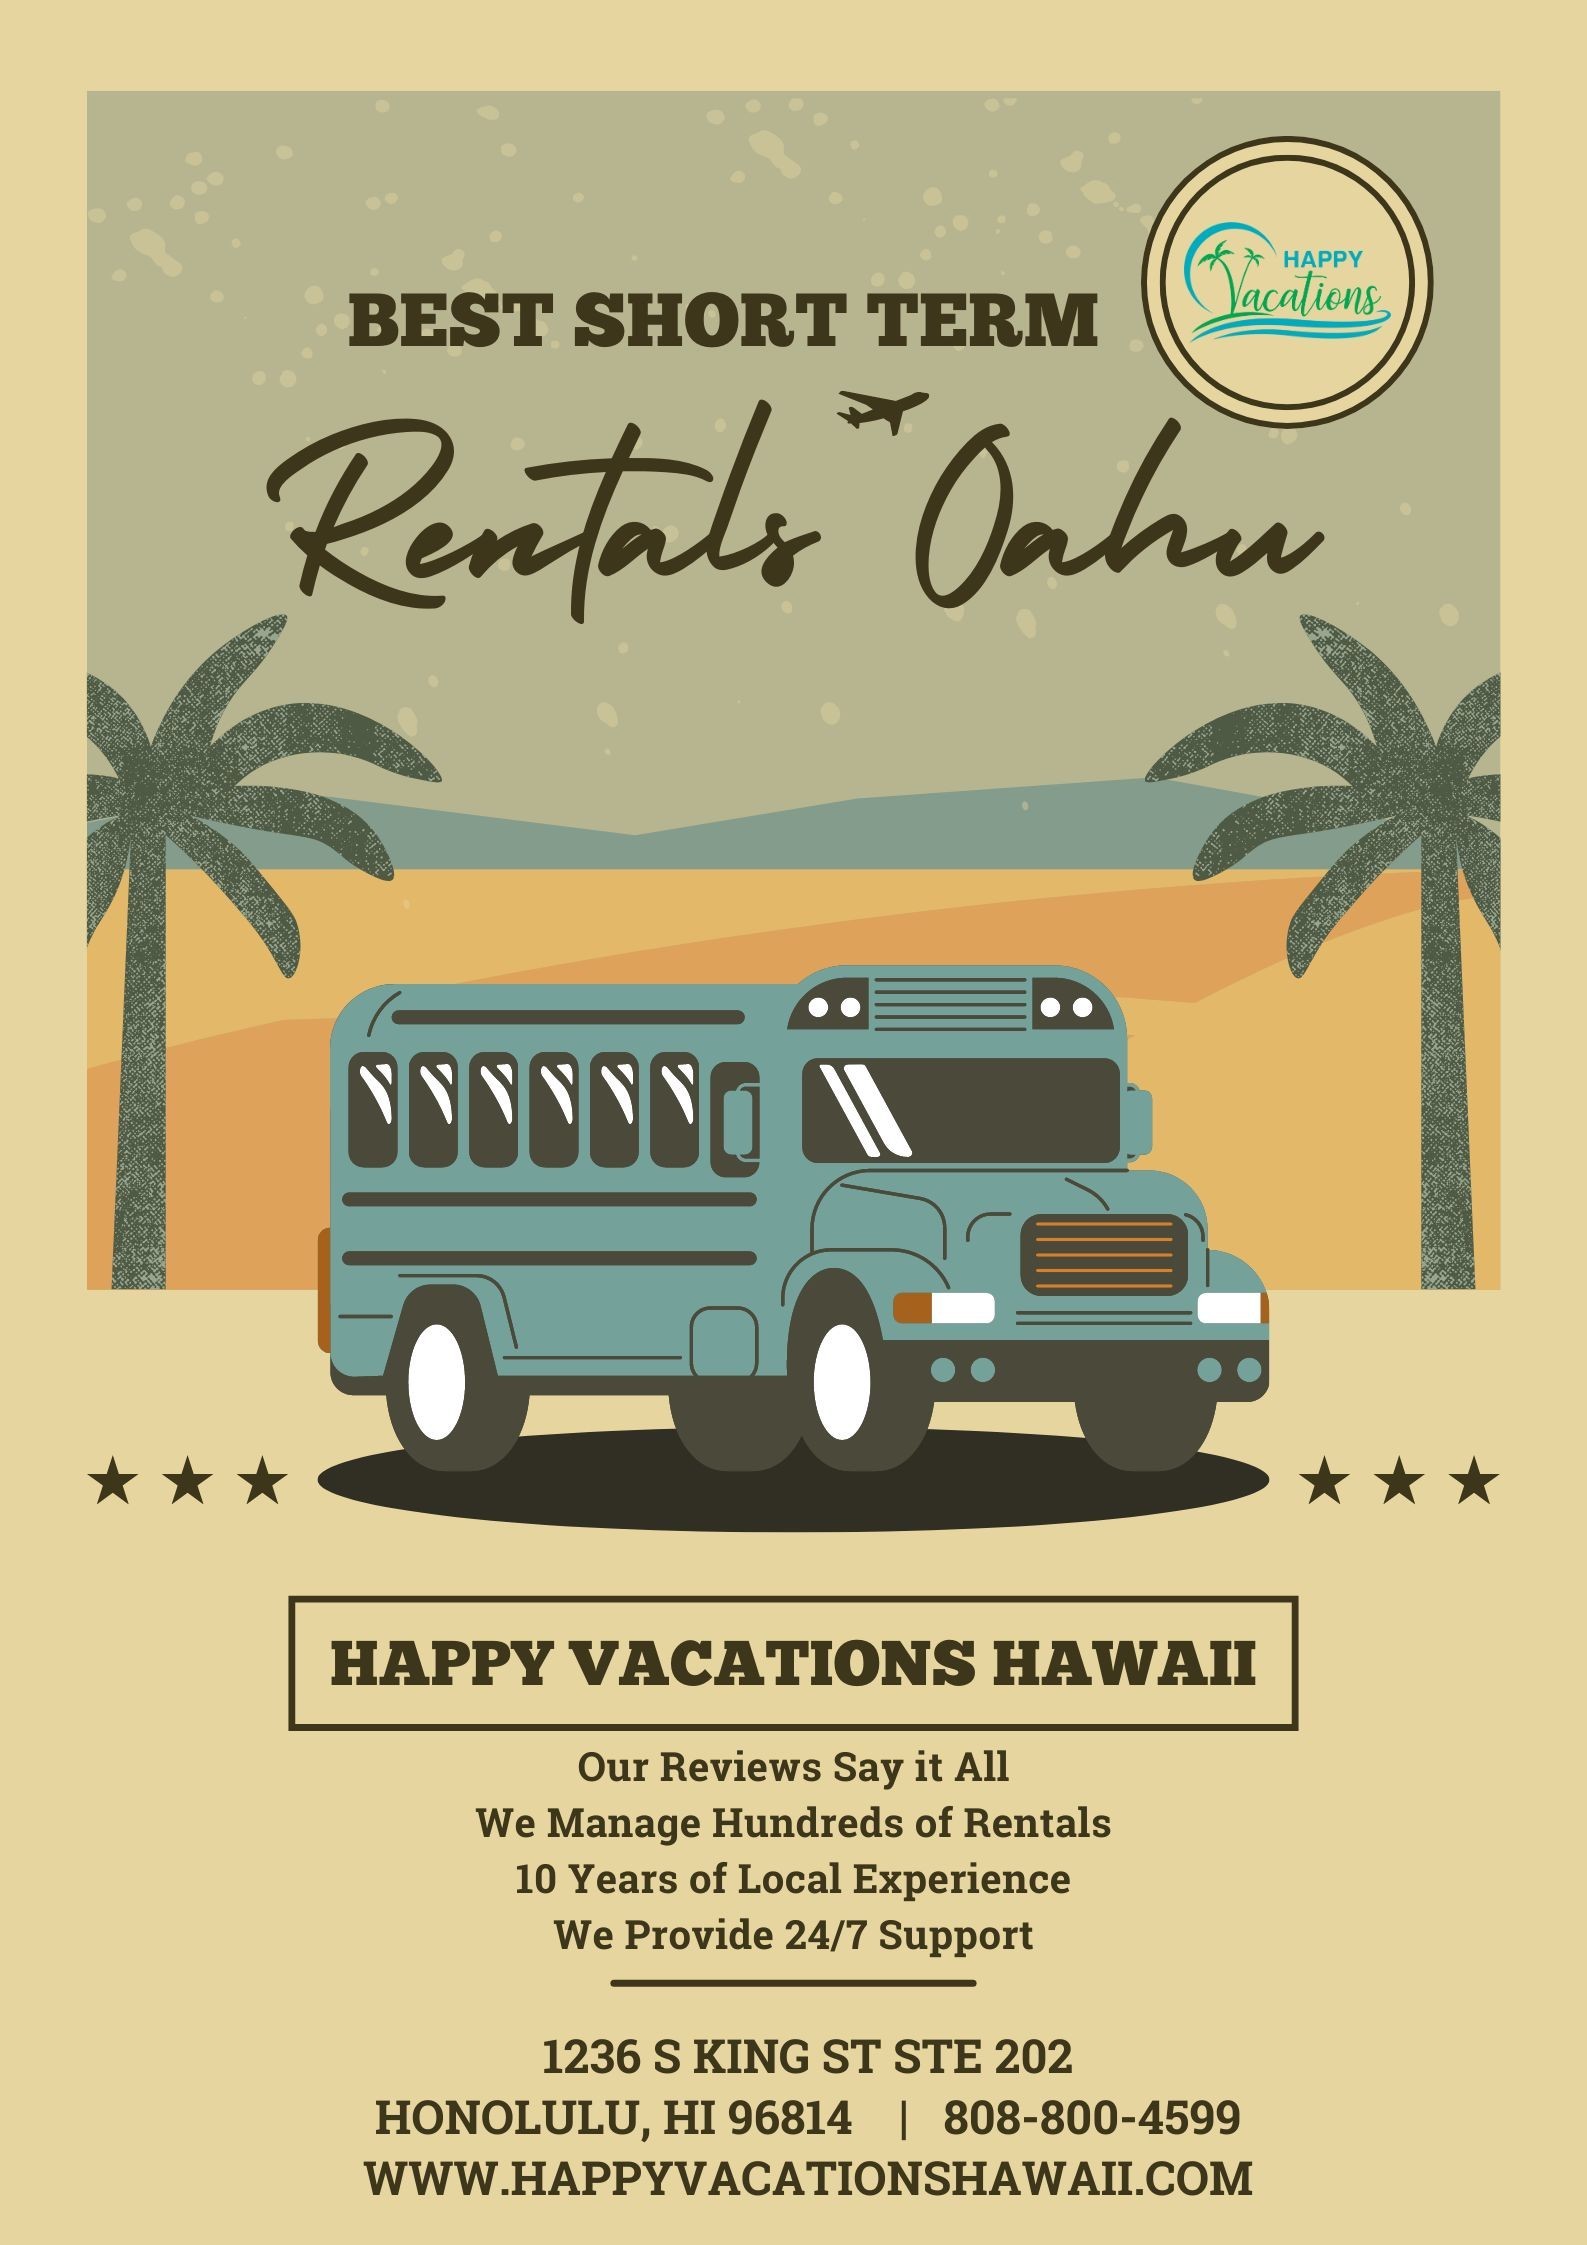 Best Short Term Rentals Oahu - Happy Vacations Hawaii